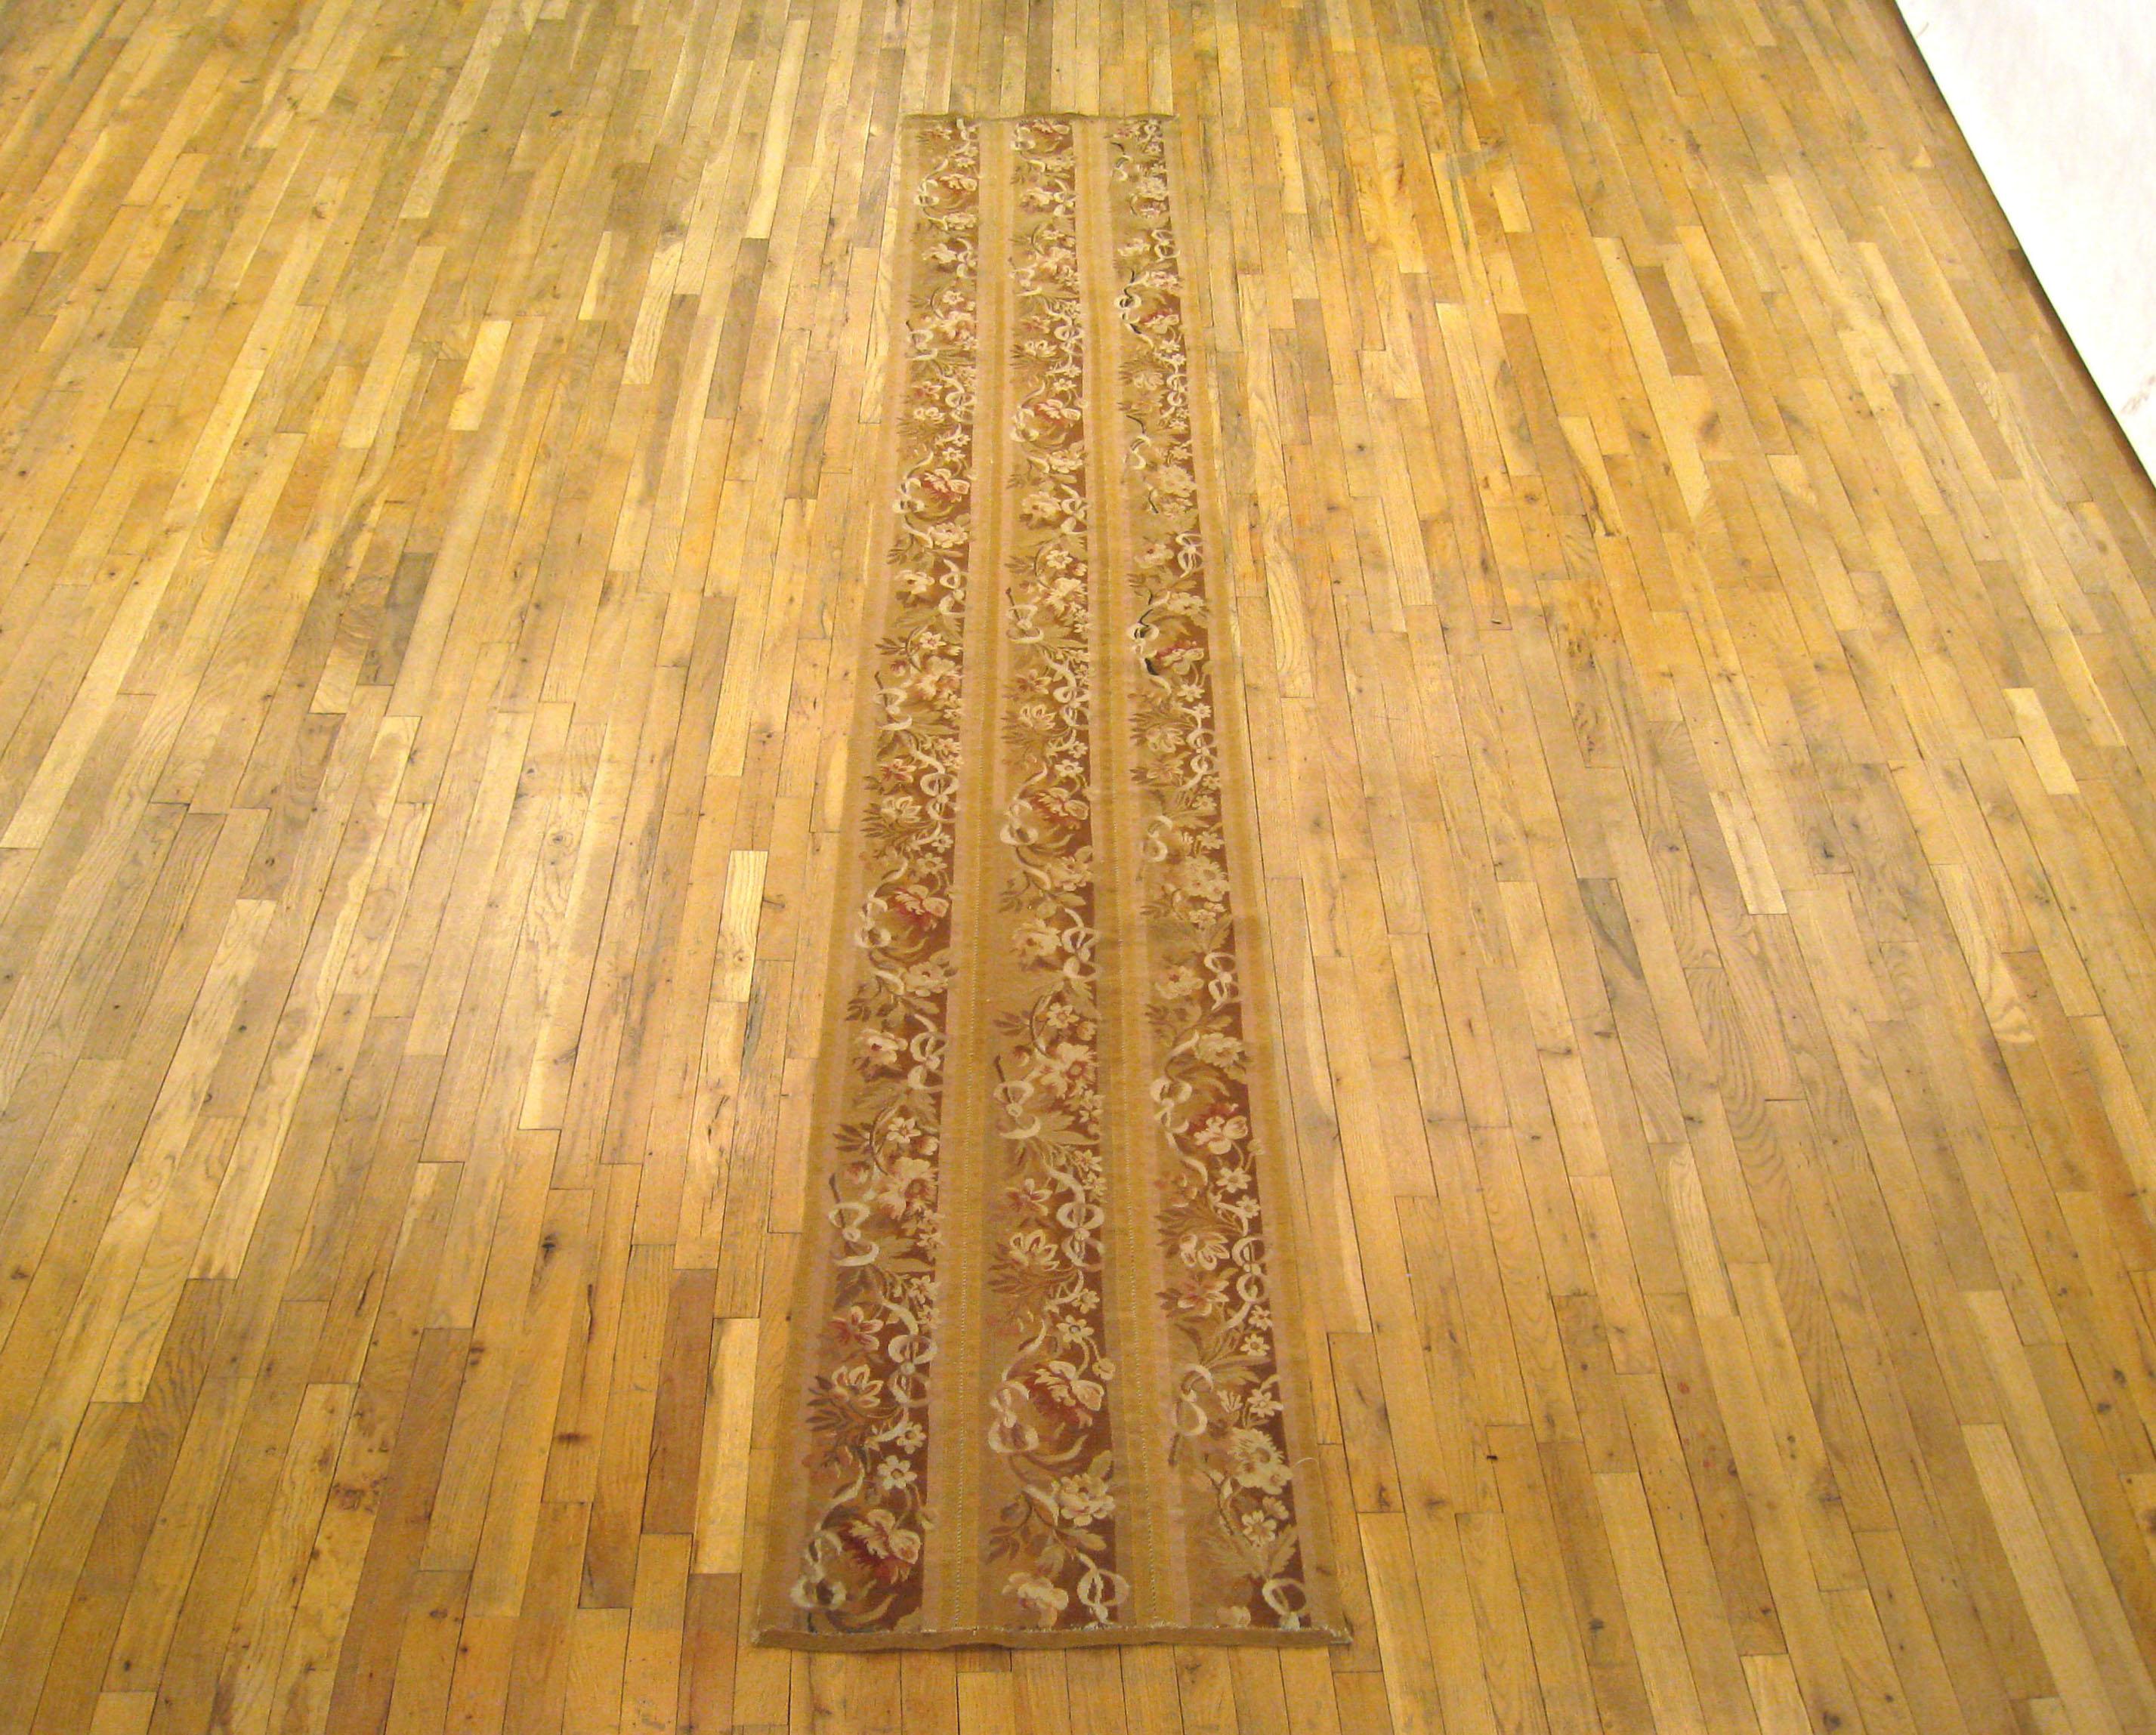 Antiker französischer Aubusson-Teppich, Läufergröße, um 1890

Ein einzigartiger antiker französischer Aubusson-Teppich, handgeknüpft mit weichem Wollflor. Dieser schöne handgeknüpfte Teppich zeigt florale Elemente auf dem zartroten Grundfeld mit